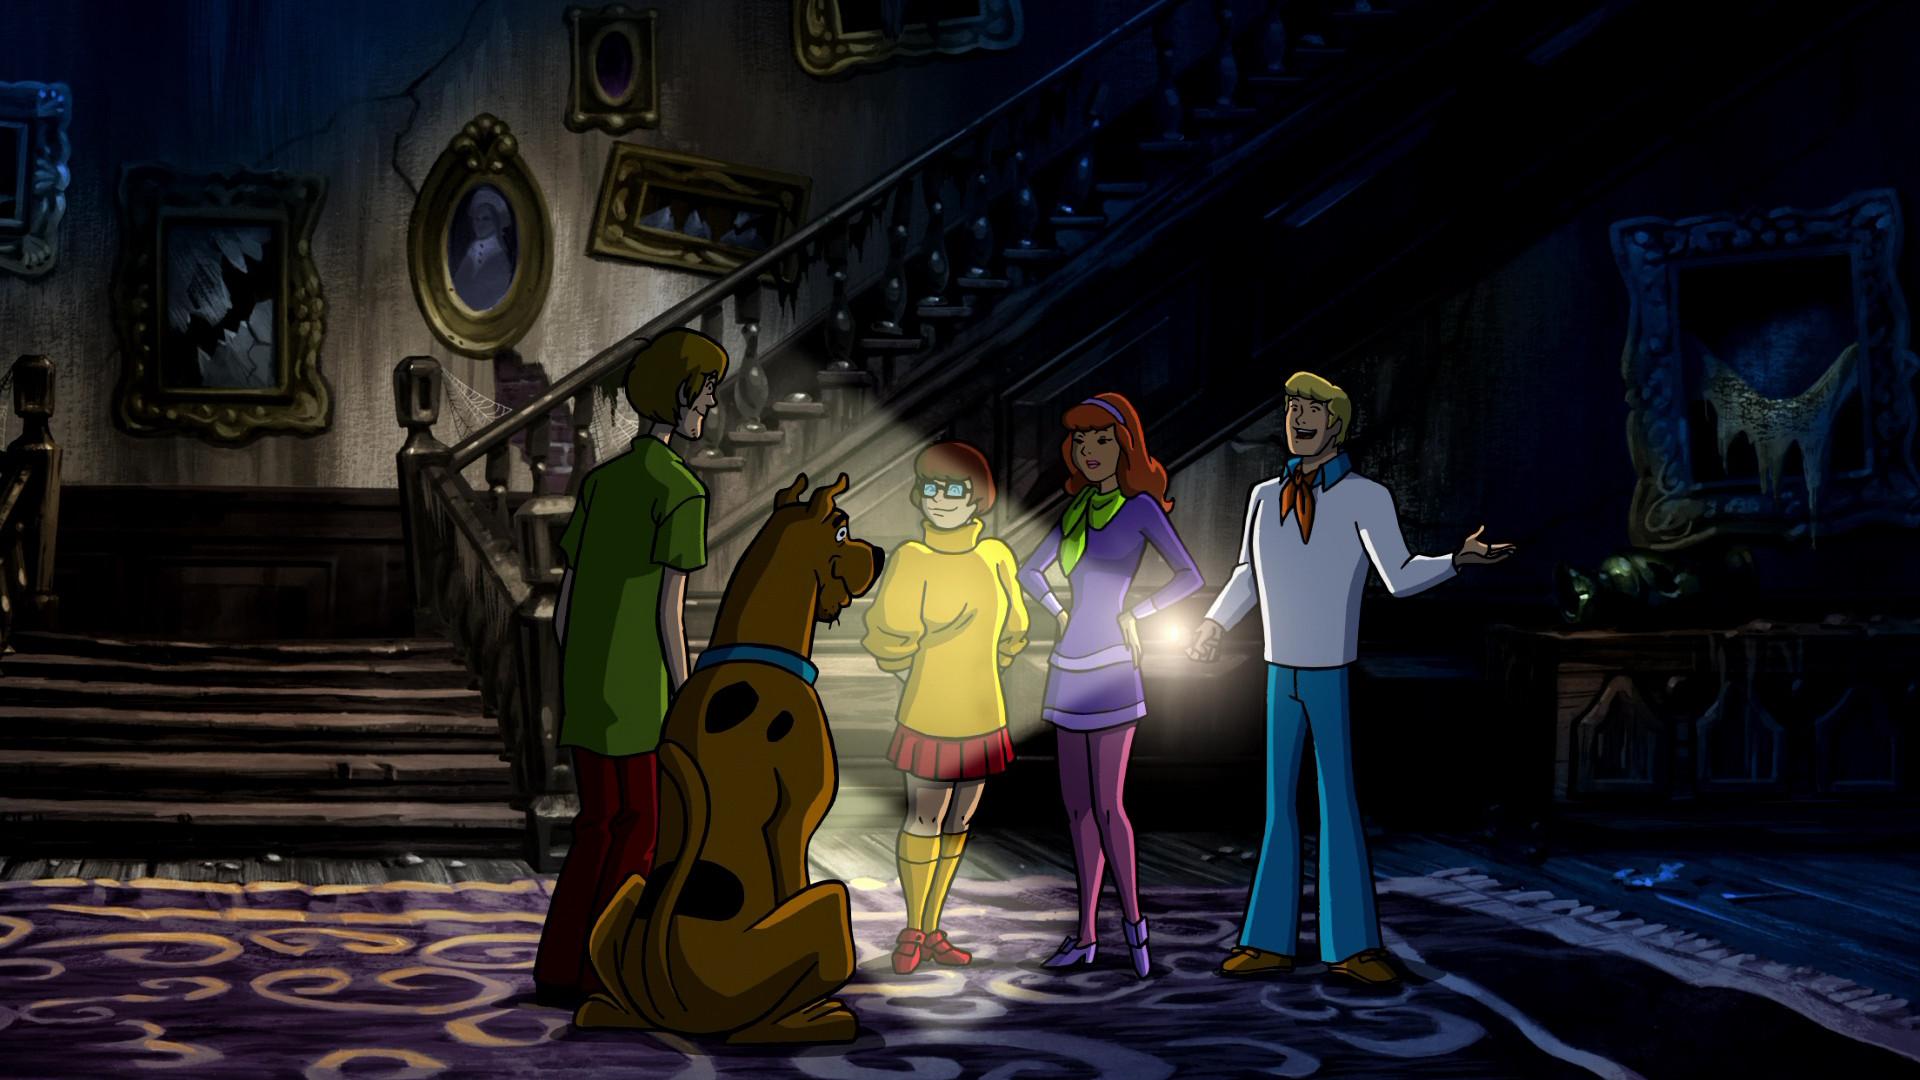 Scooby Doo Hd Wallpapers 4k - Wallpaperforu